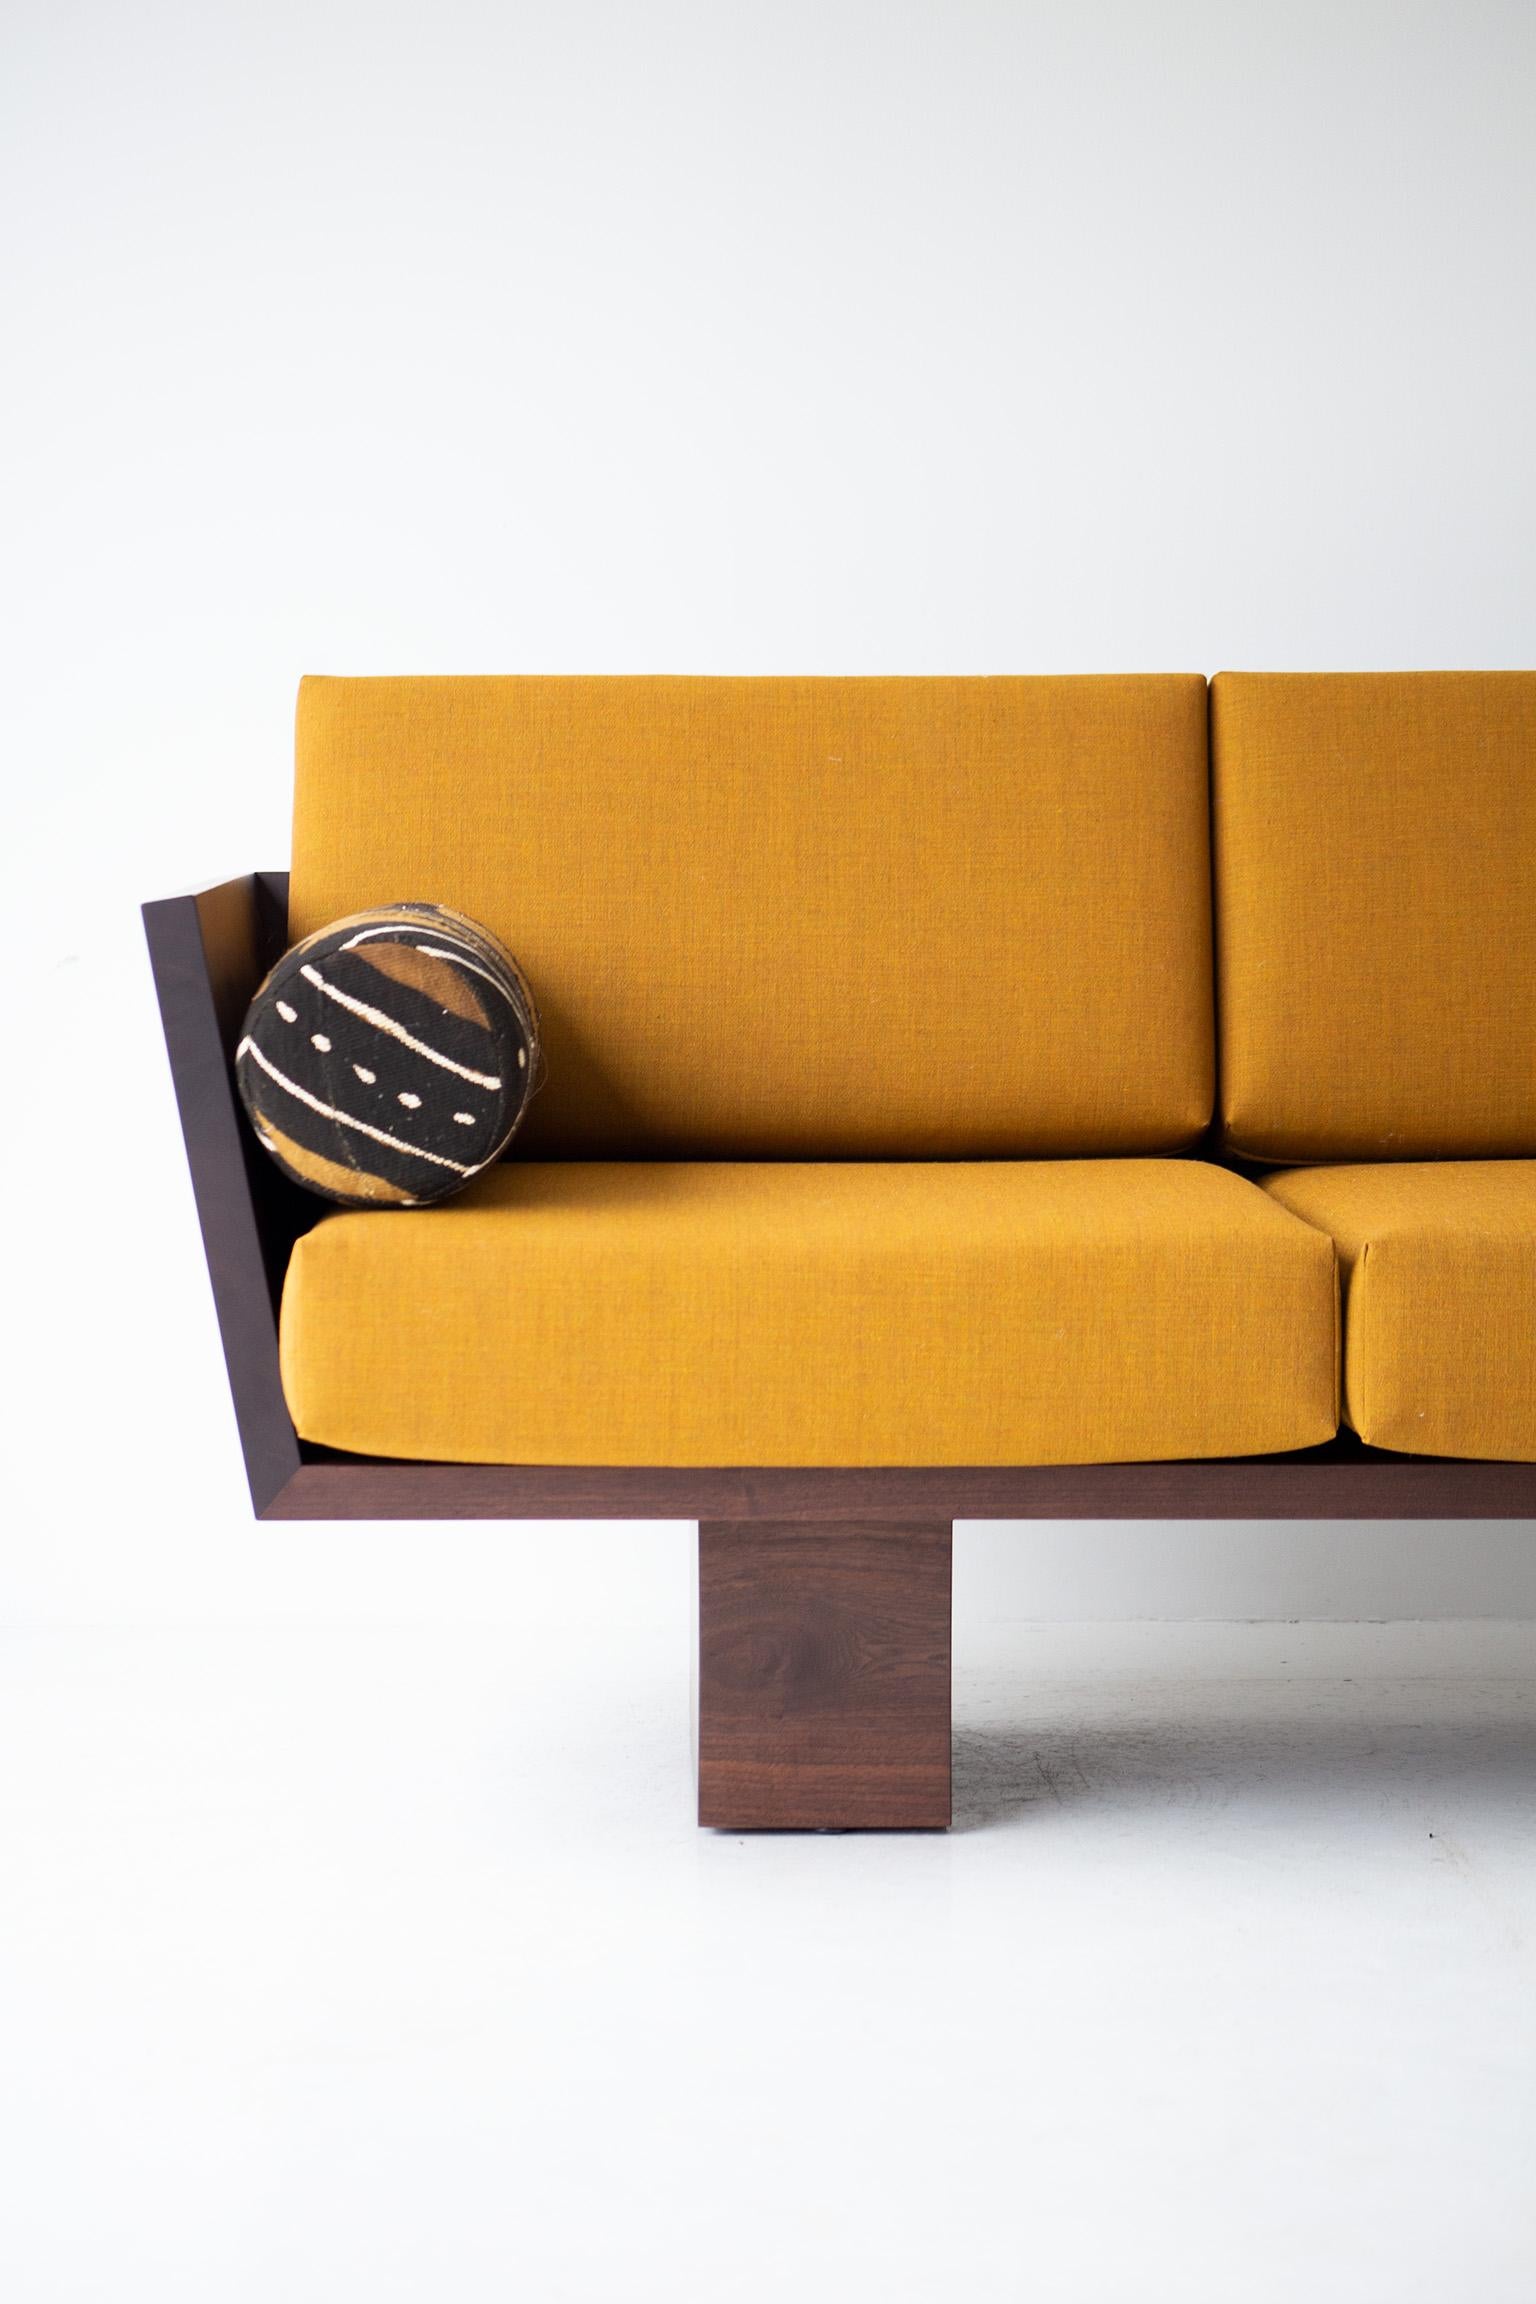 Ce canapé Suelo Modern Wood en noyer massif est magnifiquement construit en bois massif dans l'Ohio, aux États-Unis. La silhouette du canapé est simple, moderne et élégante, avec des coussins de siège et de dossier confortables. C'est le canapé